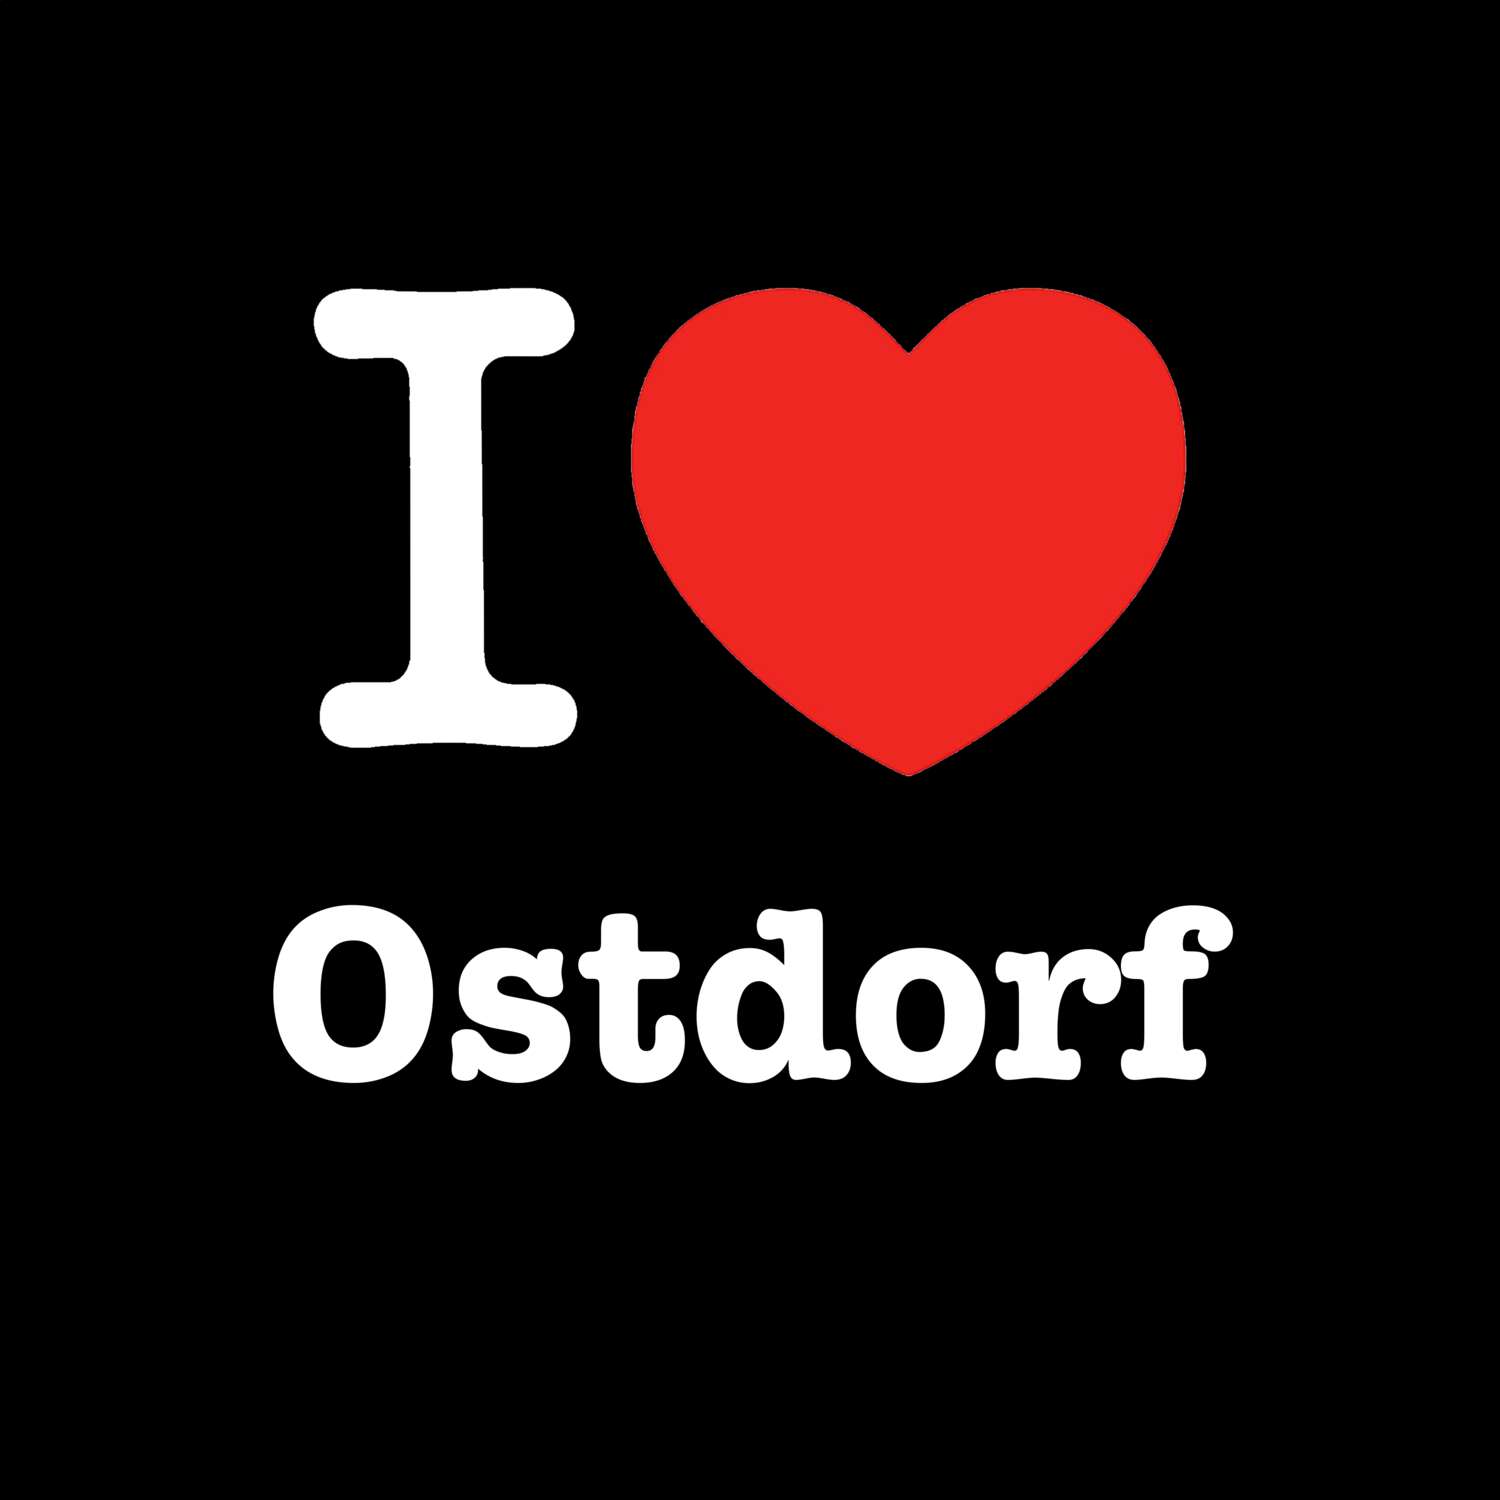 Ostdorf T-Shirt »I love«